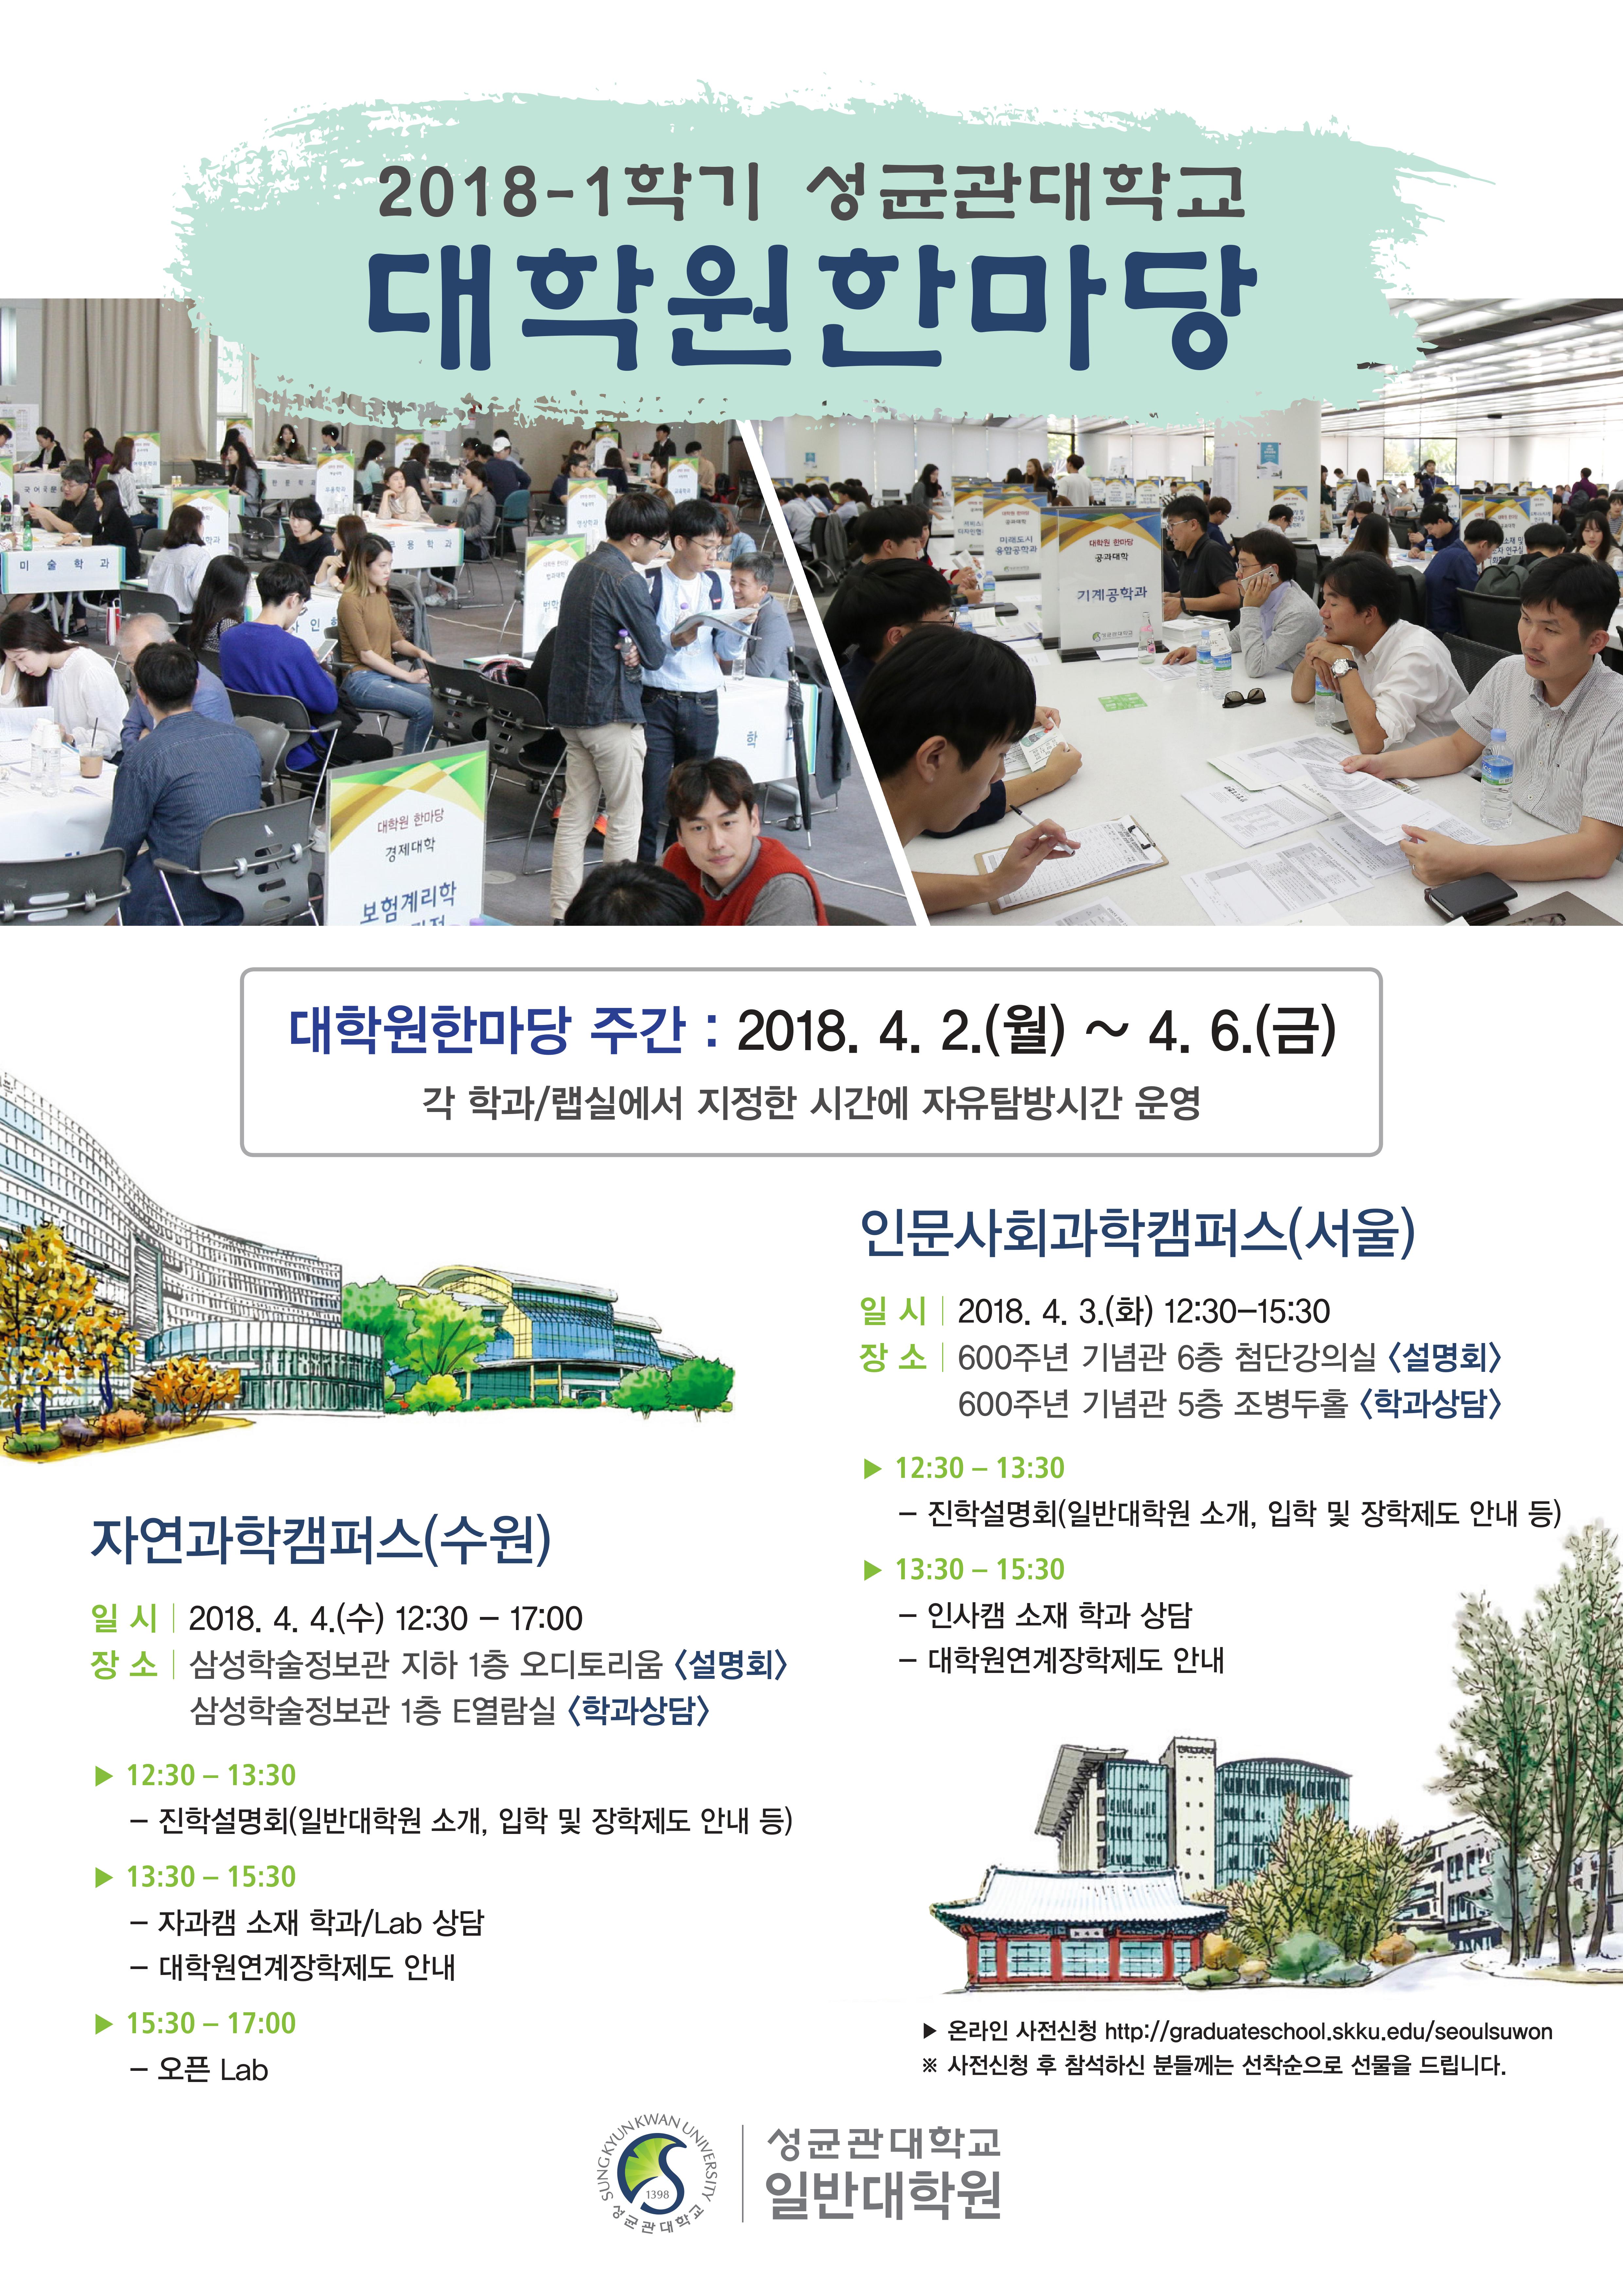 2018학년도 1학기 대학원 한마당 개최(서울/수원)